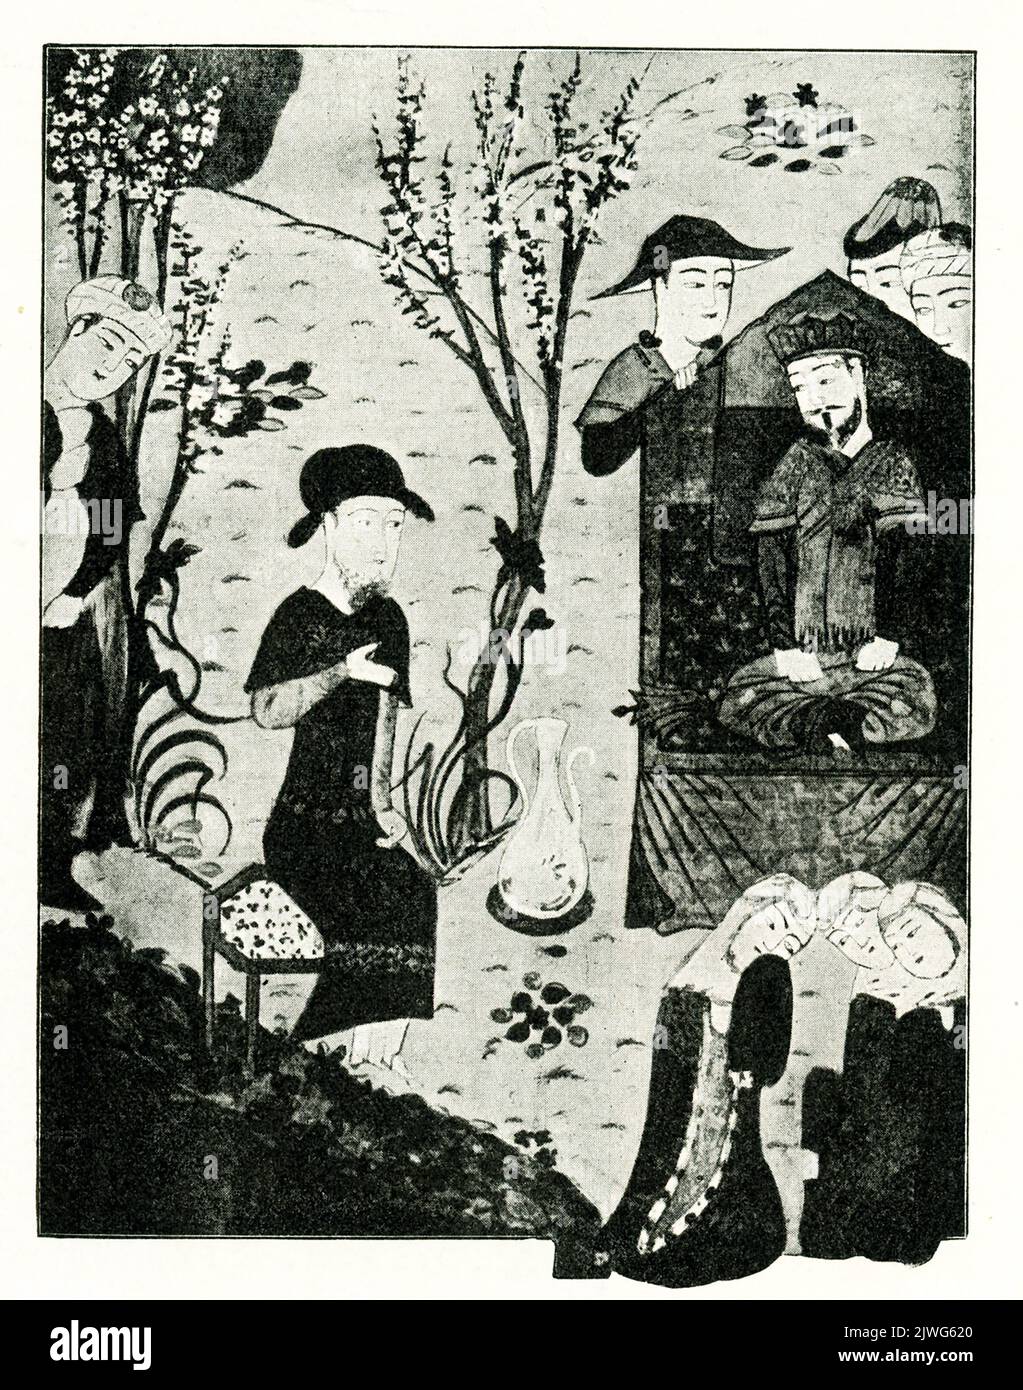 La leyenda de esta imagen de 1910 dice: “El gobernante mongol Odogei Khan [tercer] hijo de Genghis Khan—miniatura de una colección en París” El general mongol y estadista Kublai Khan (también escrito Khubilai Khan) era el nieto de Genghis Khan. Kublai Khan (b.1215–d. 1294) conquistó China y fundó la dinastía Yuan o Mongol en China. Ögedei Khan (también Ogotai y Oktay) nació c.. 1186 – y murió 1241. Fue el segundo Gran Khan del Imperio Mongol en sucesión de su padre. Continuó la expansión del imperio que su padre había comenzado, y era el Gran Khan cuando los mongoles Foto de stock